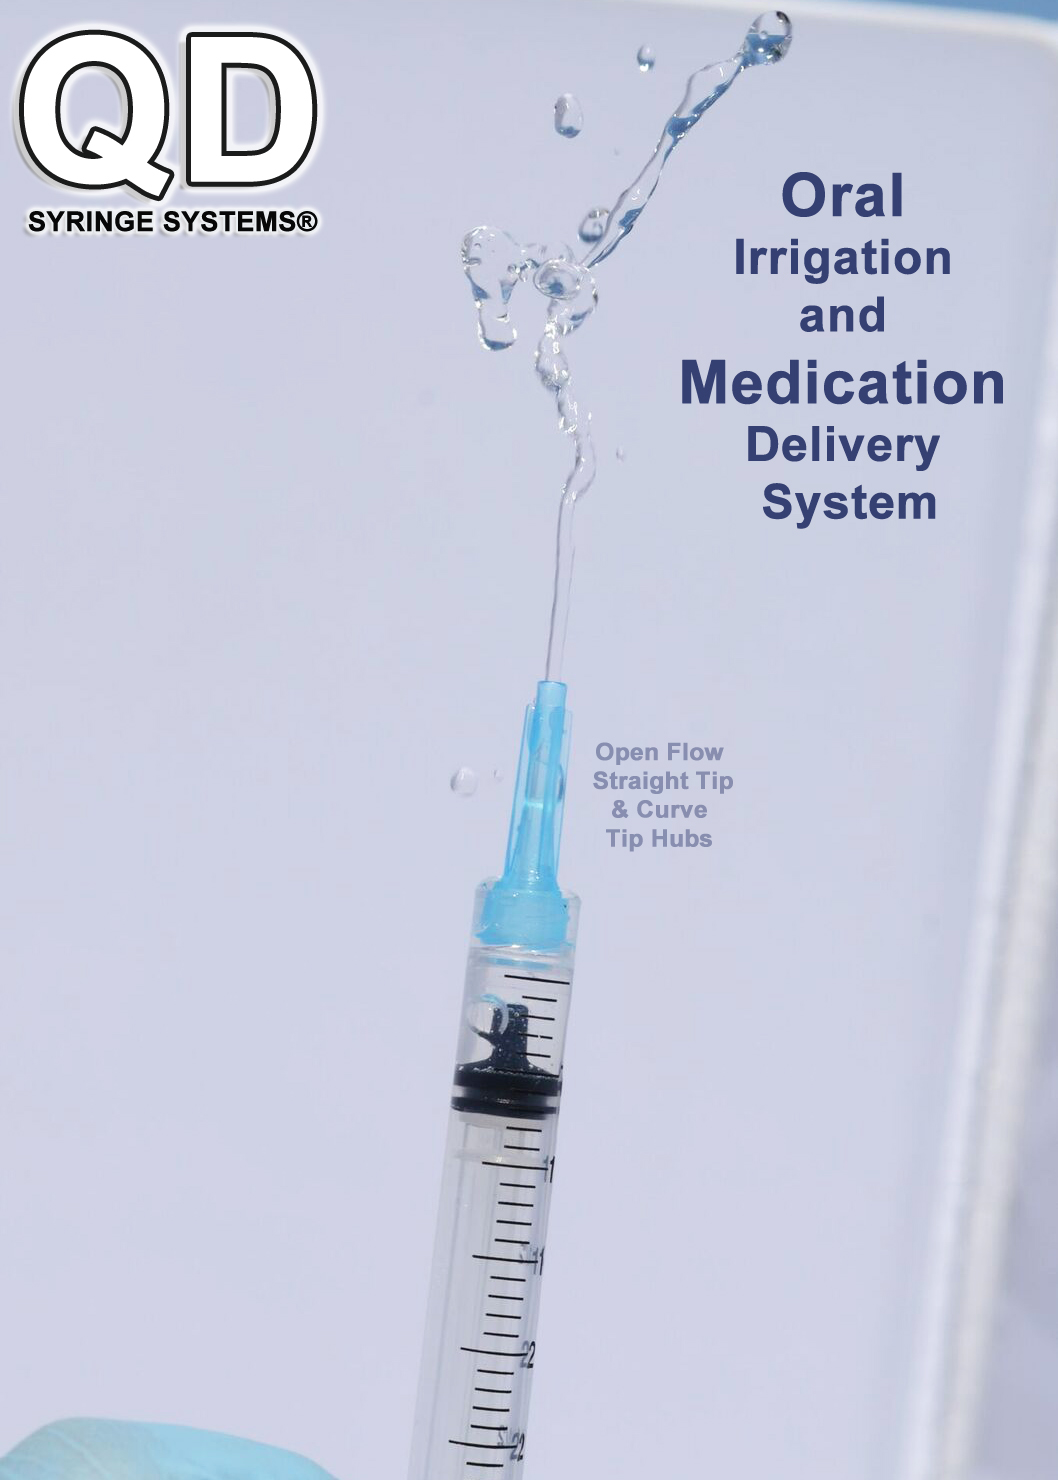 qd-syringe-oral-irrigation-and-medication-delivery-system